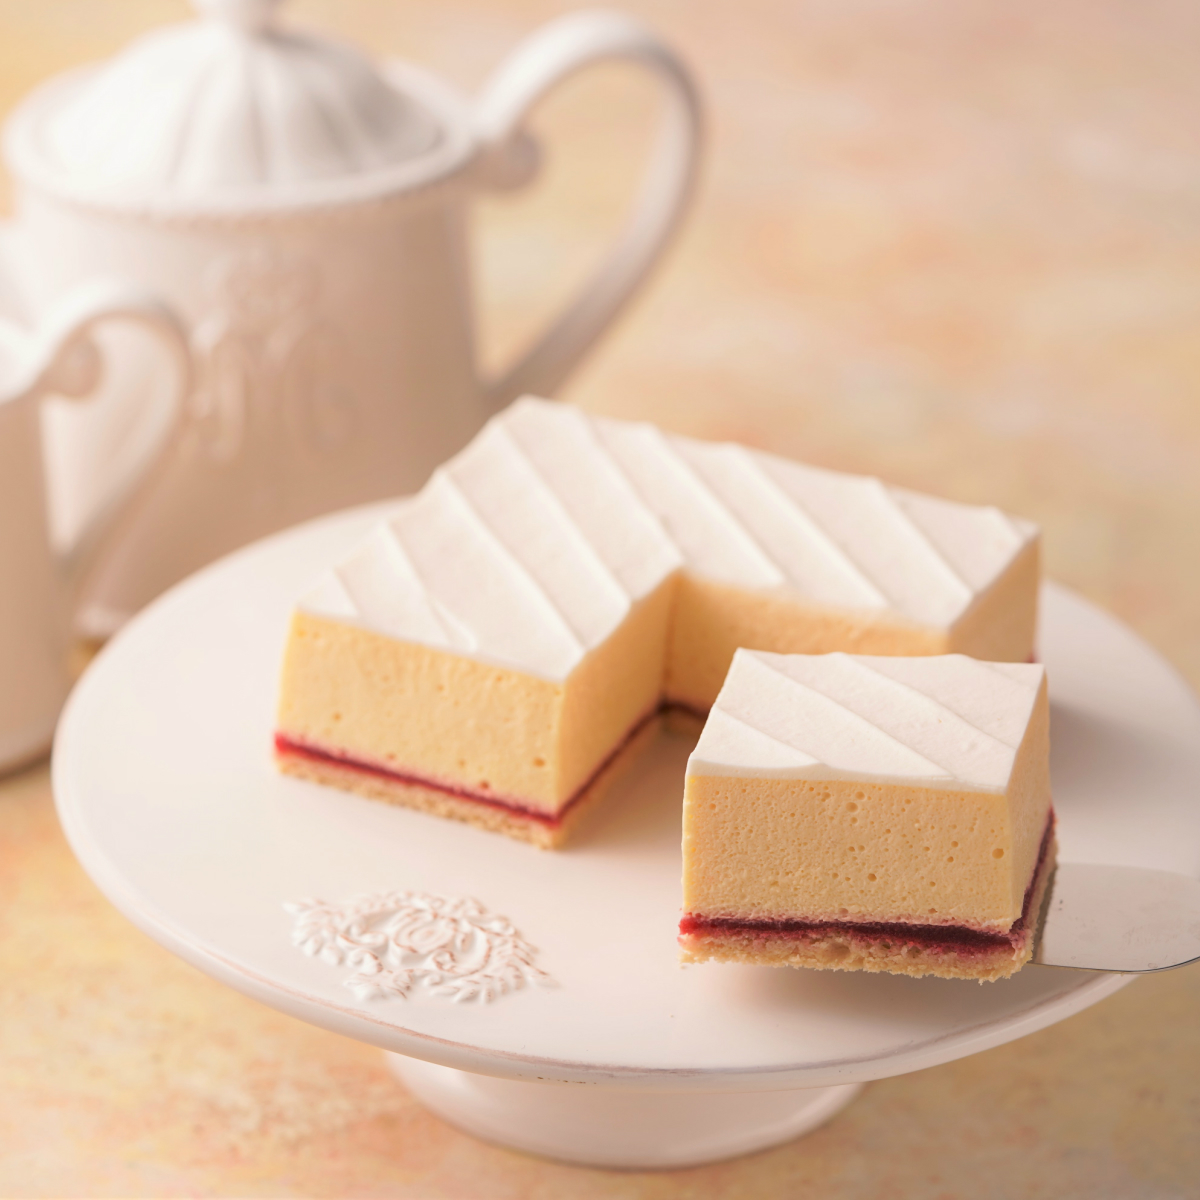 楽天市場 低糖質スイーツ 砂糖不使用糖質72 カット カロリー15 カット 美容 健康にとても良い 低糖質レアチーズケーキ 4 5号 誕生日ケーキ のお店ケベック